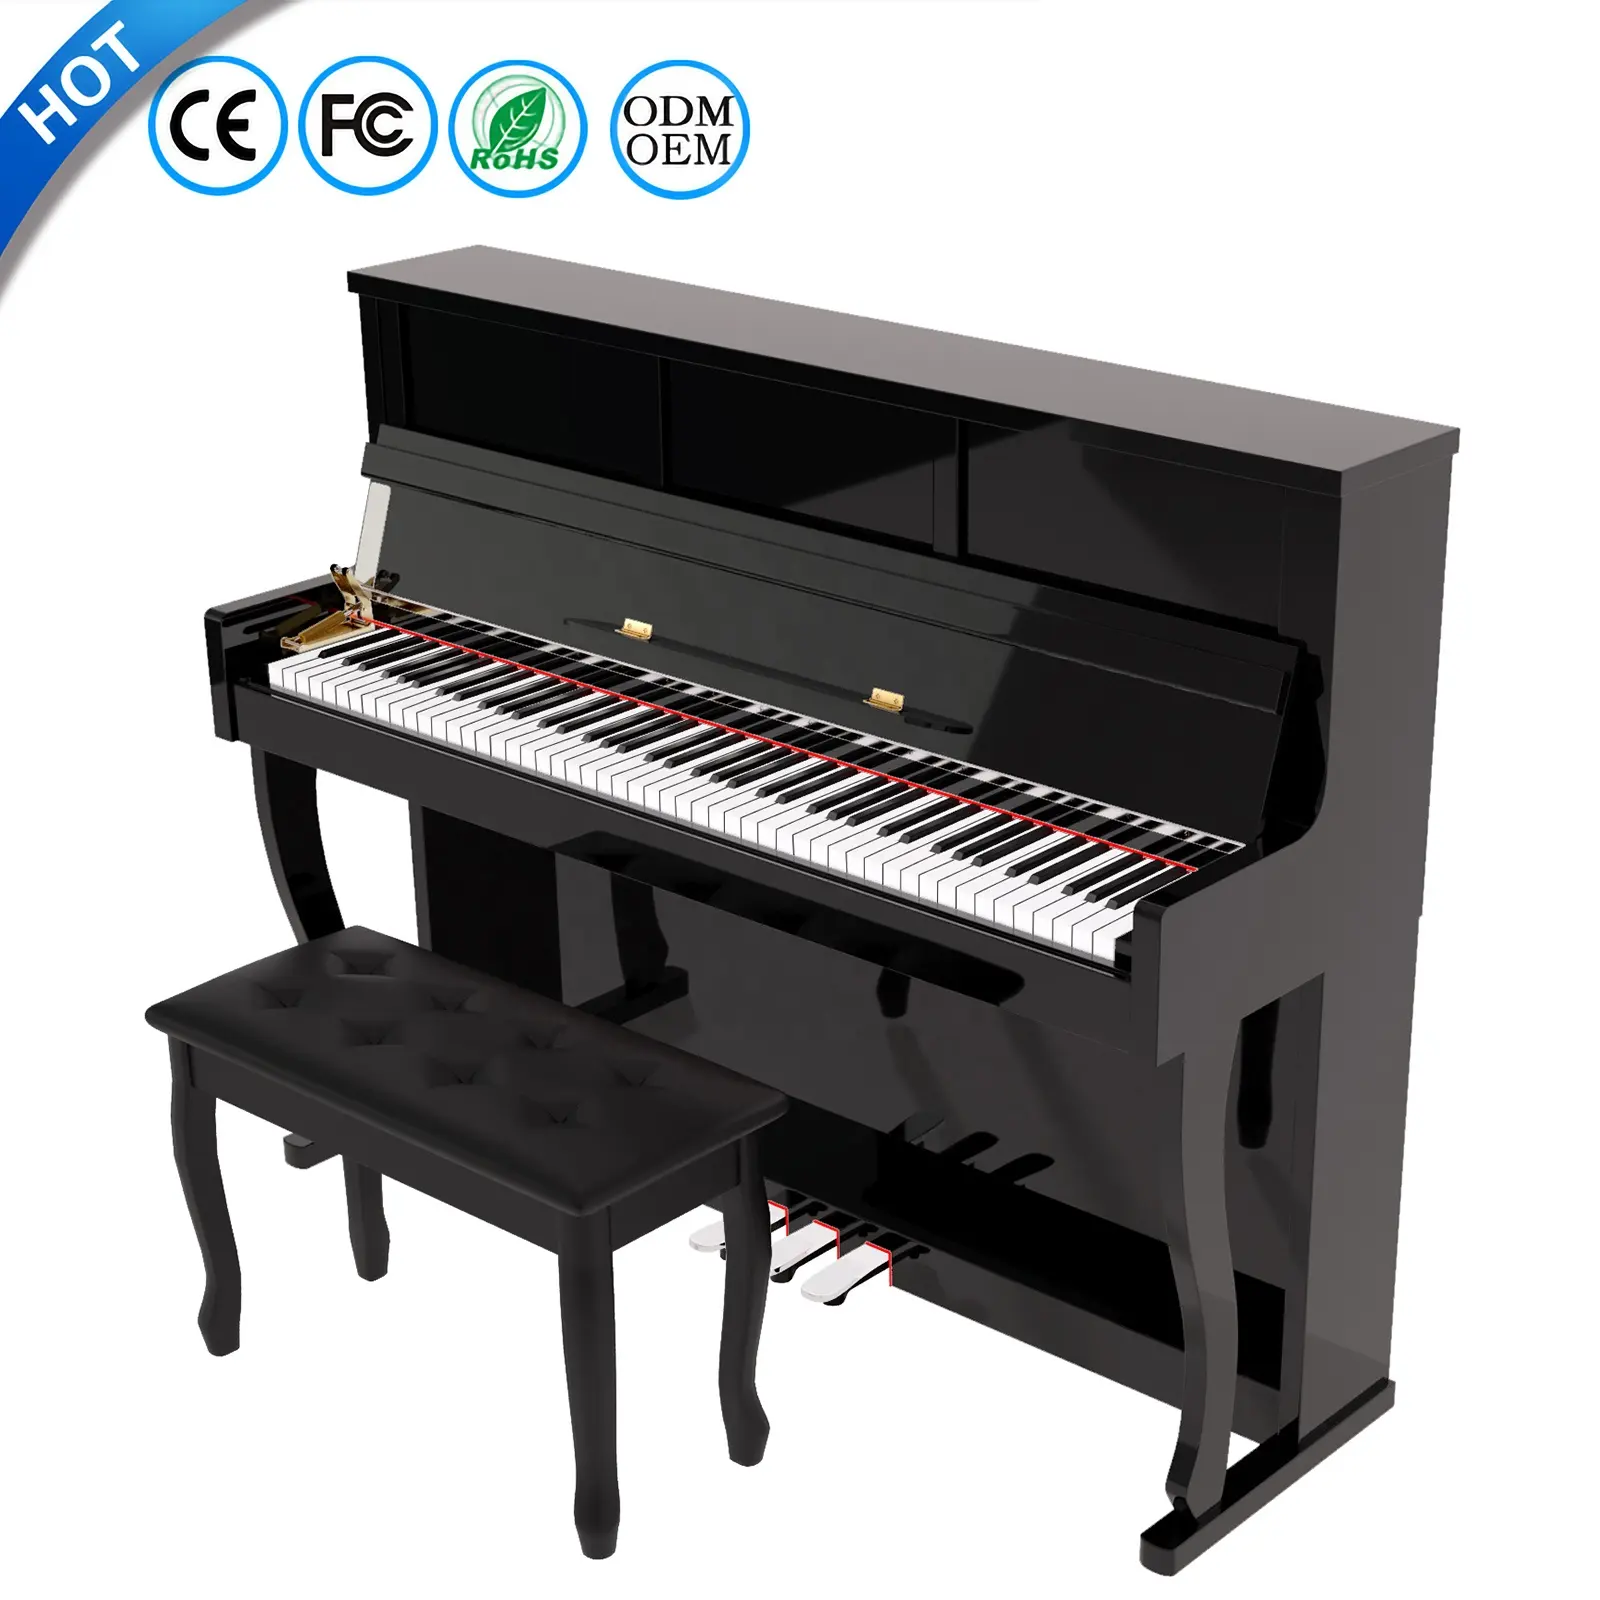 لوحة مفاتيح بيانو إلكترونية بلانث لوحة مفاتيح بيانو 88 مفتاح مرجّح رقمي بيانو لوحة مفاتيح موسيقية بروفيسيونيل